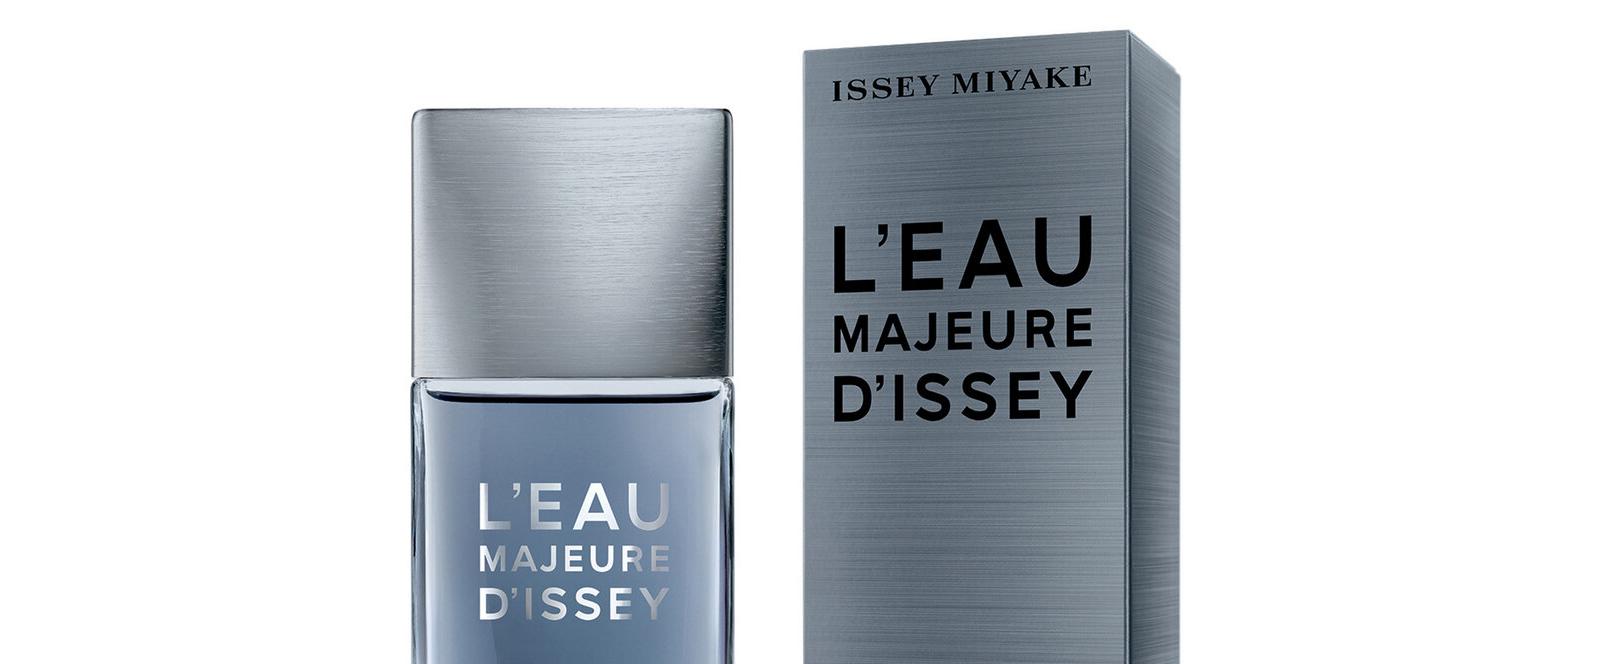 Neuer Duft von Issey Miyake: L’Eau Majeure d’Issey